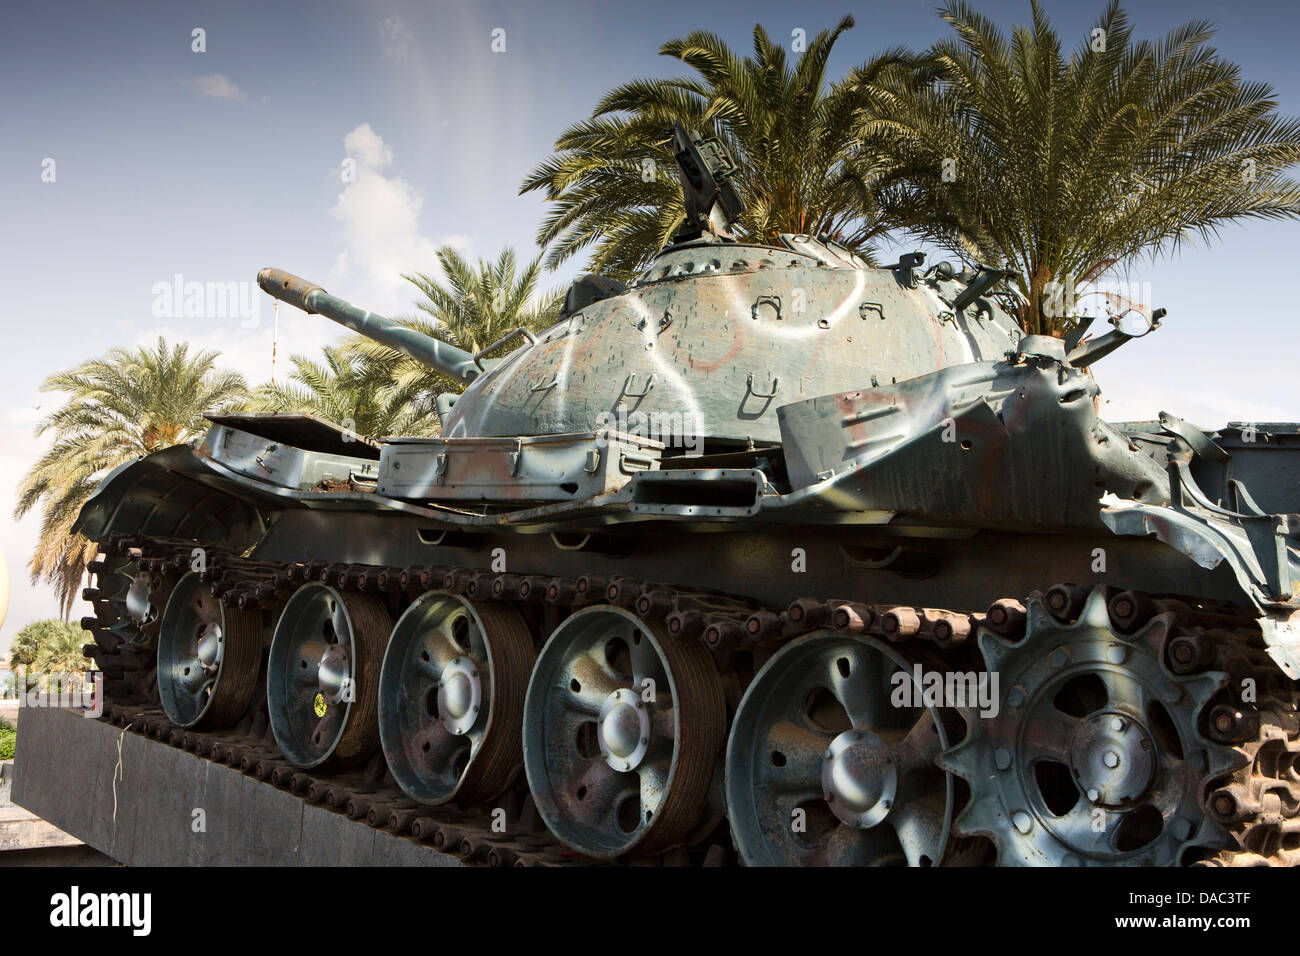 Afrika, Eritrea, Massawa, Tualud, Krieg Speicher Platz drei äthiopischen Panzer bilden Denkmal 1990 Krieg Stockfoto